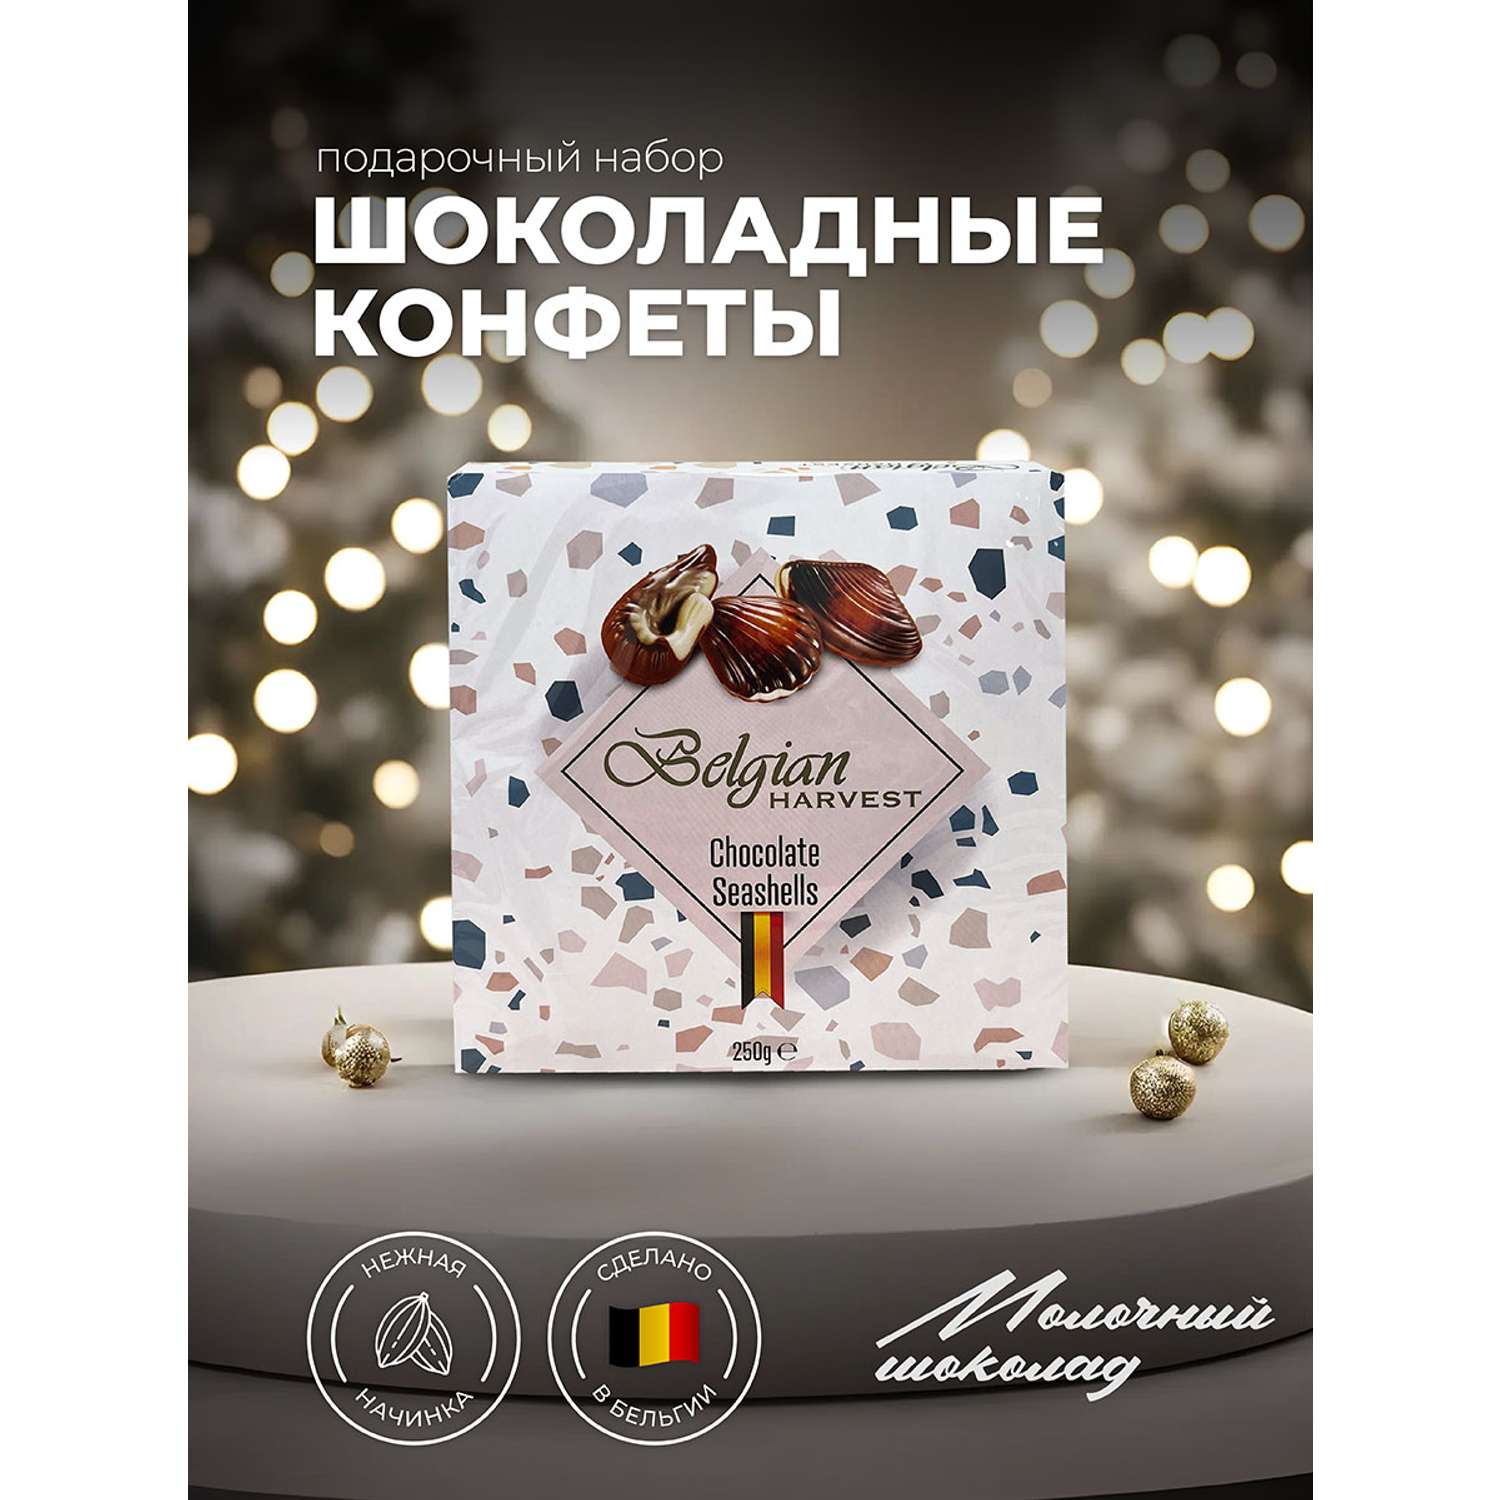 Шоколадные конфеты Belgian Harvest ракушки 250г - фото 1